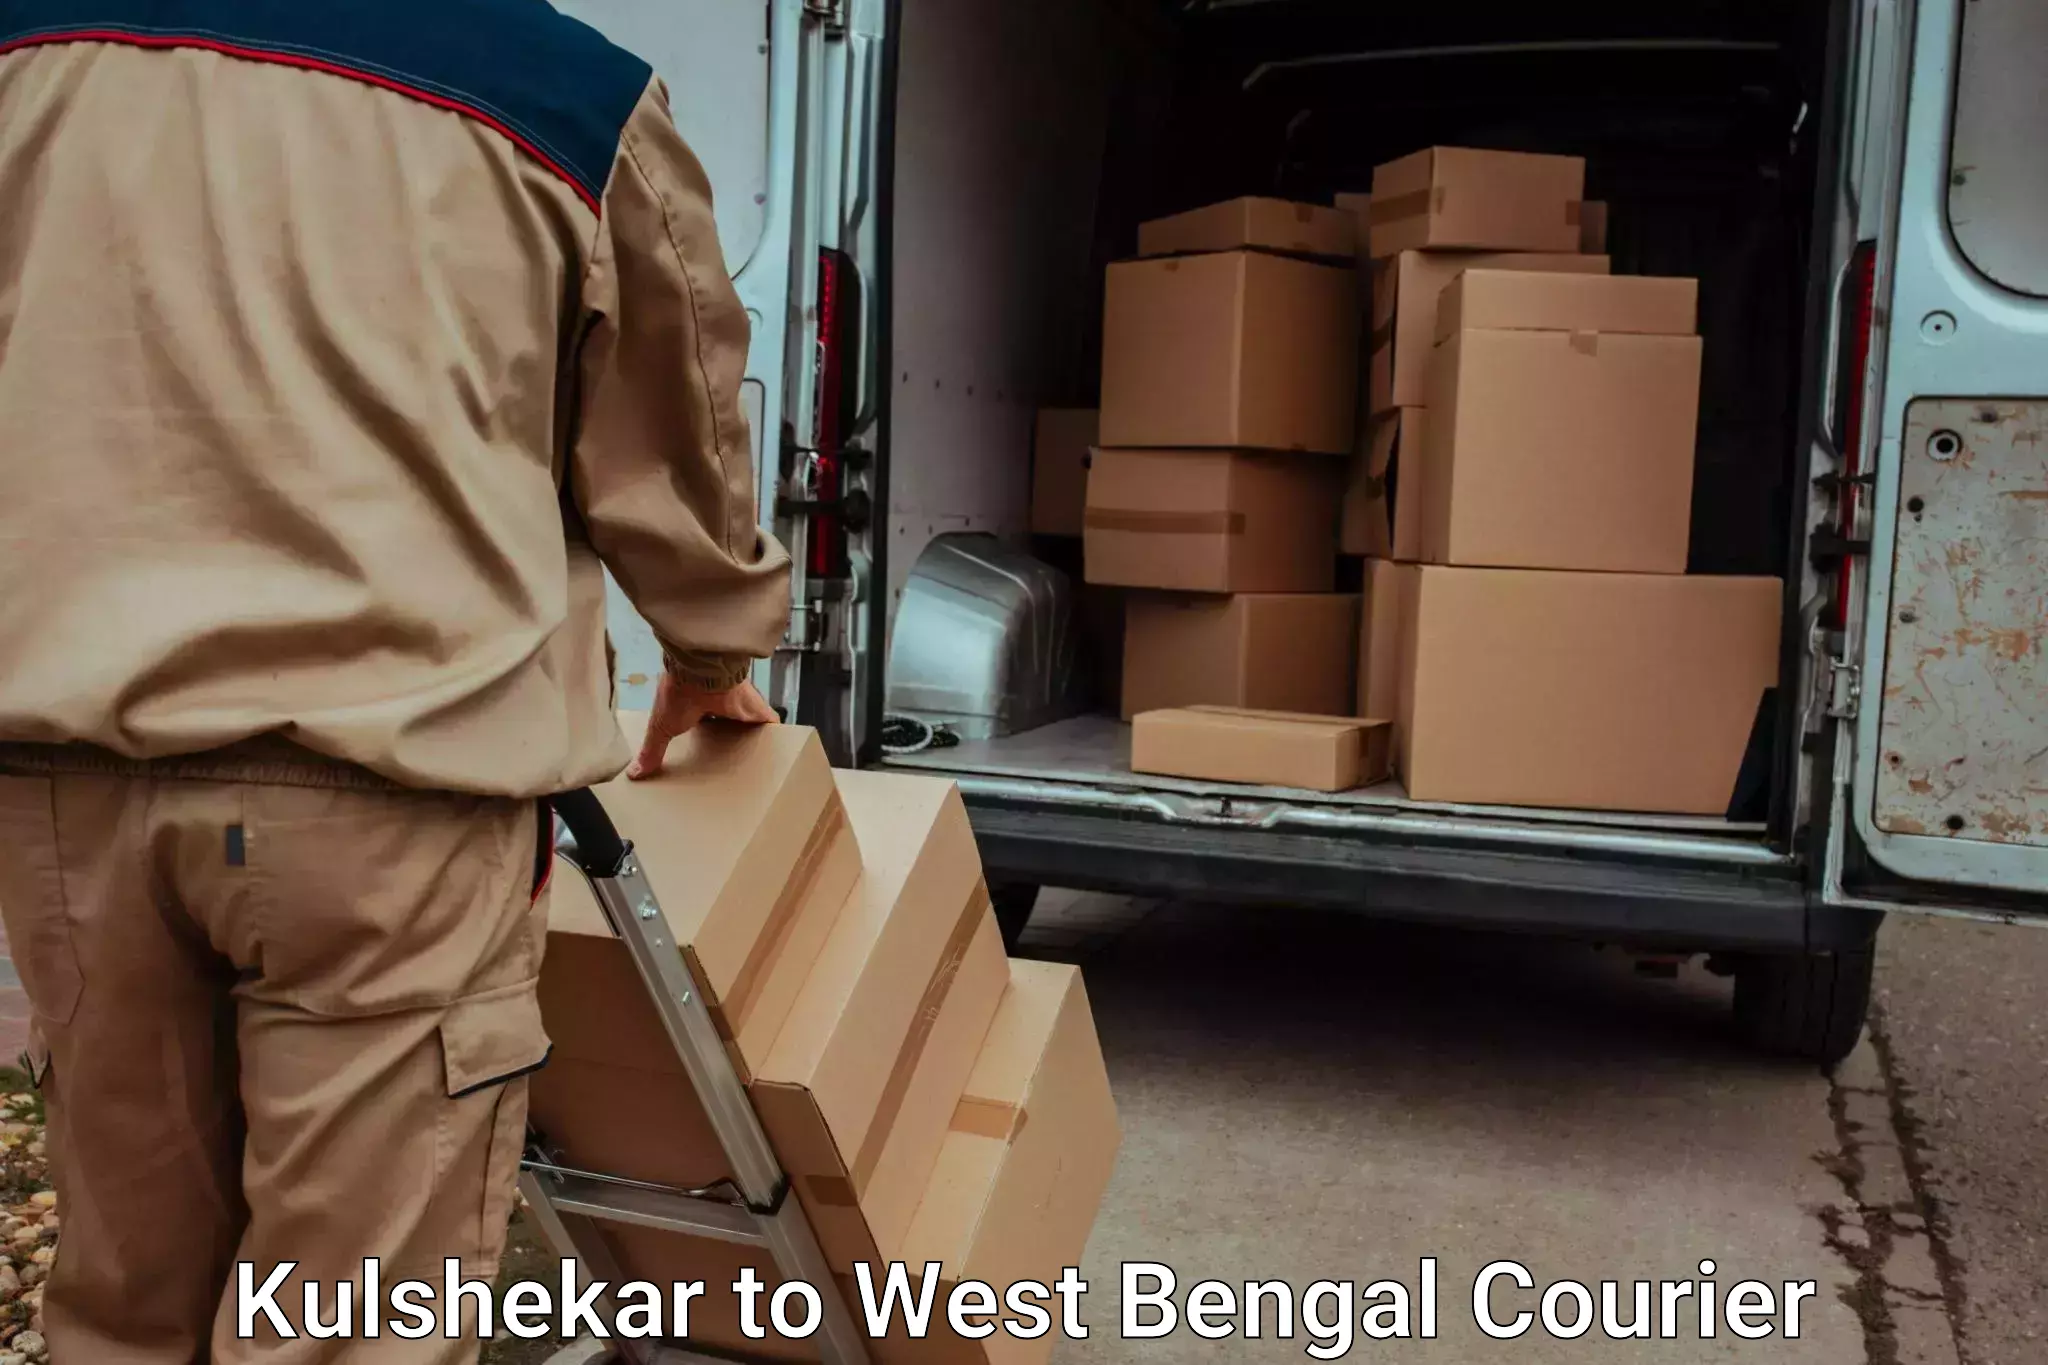 Luggage transport deals Kulshekar to Maynaguri